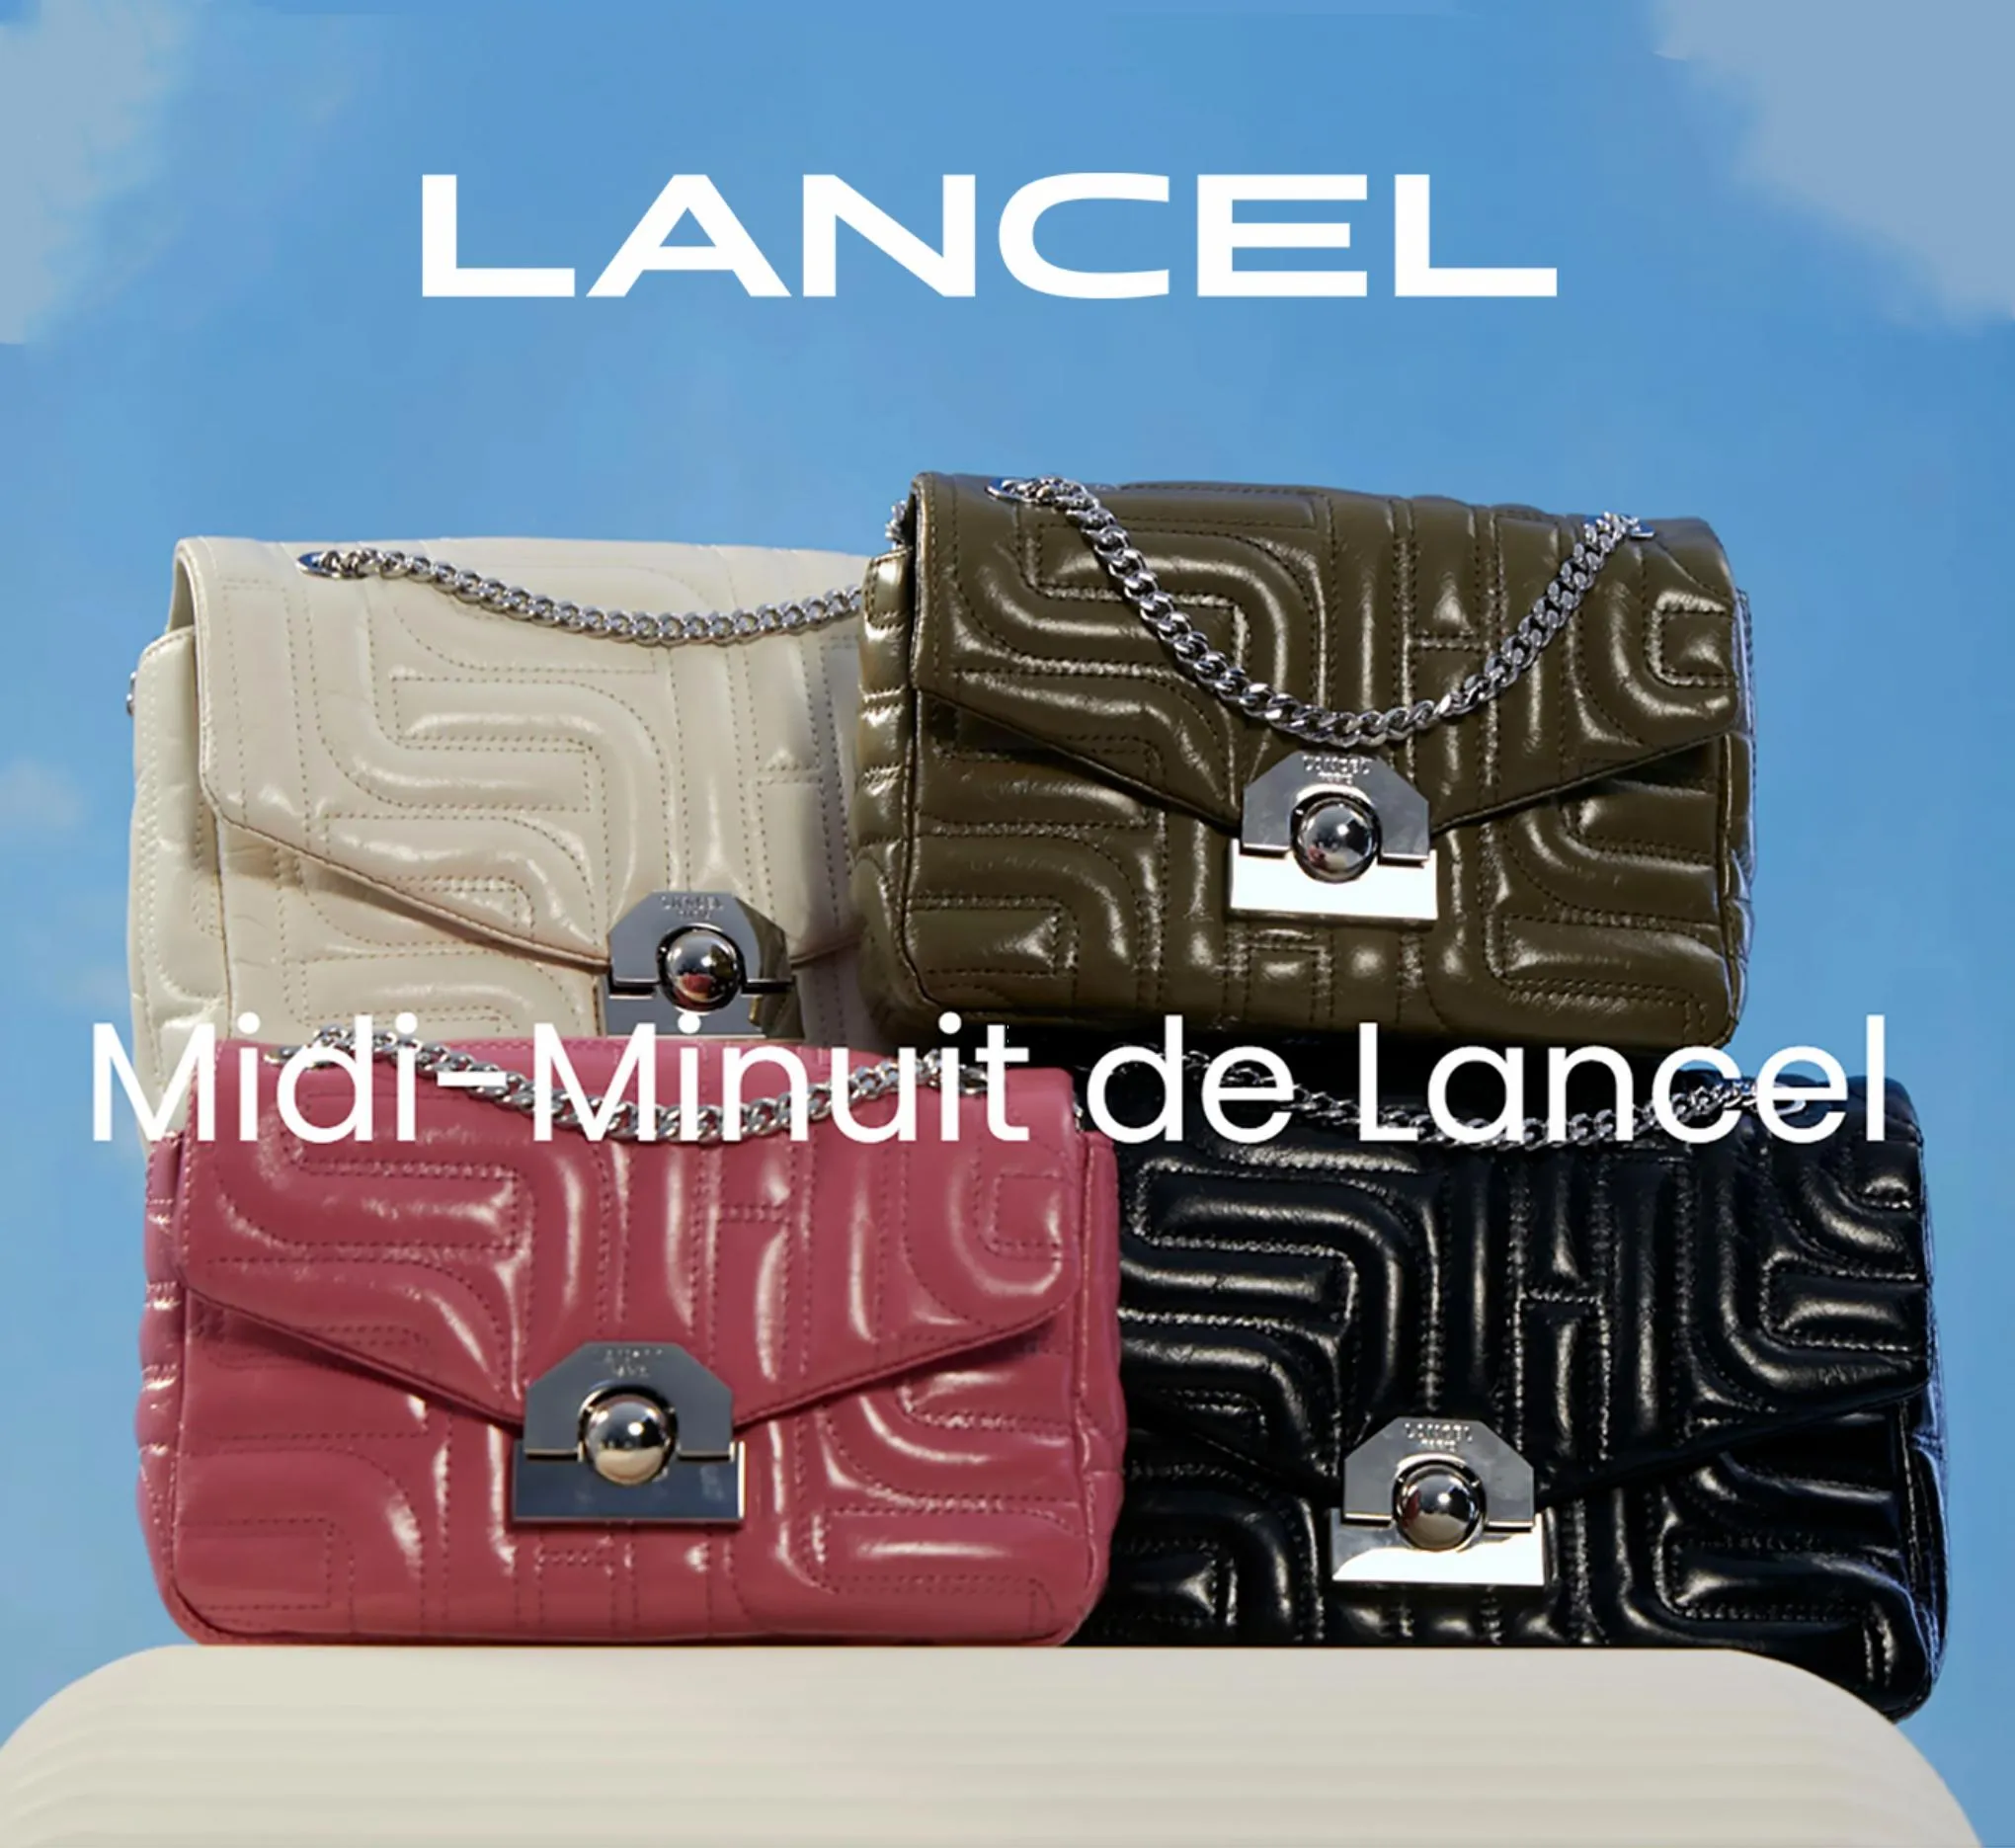 Catalogue Midi-Minuit de Lancel!, page 00001